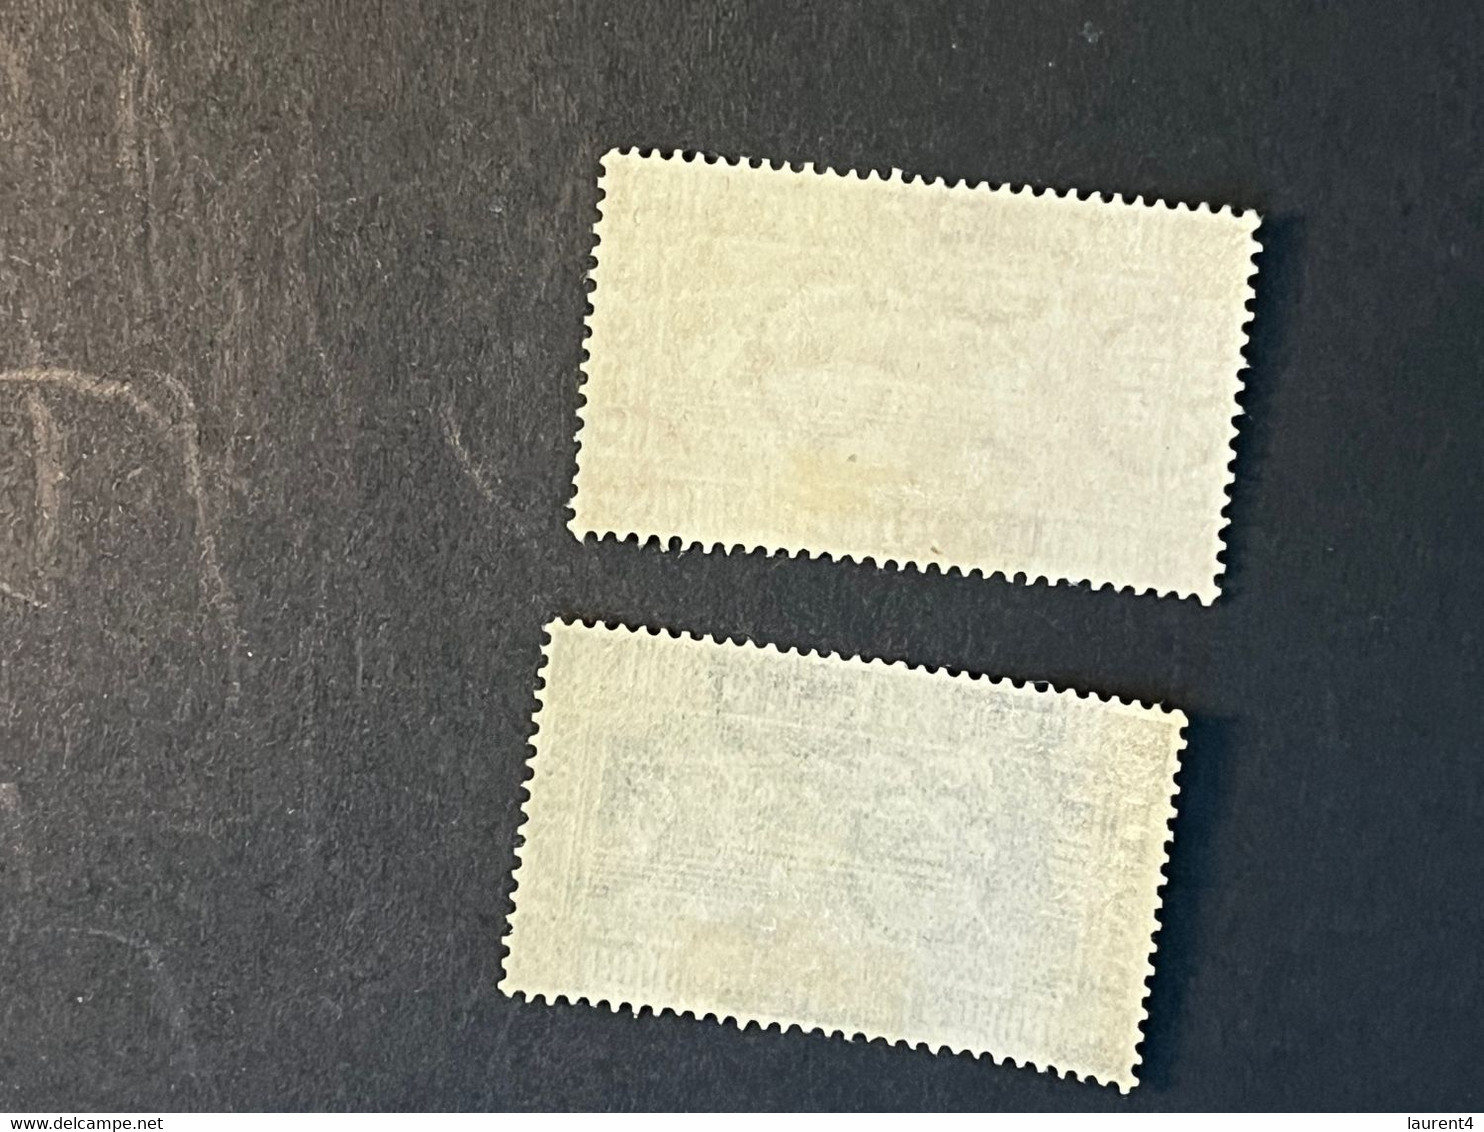 (STAMPS 23-1-2023) Ireland (mint / Neuf) 2  Stamps / 1946 - Ungebraucht